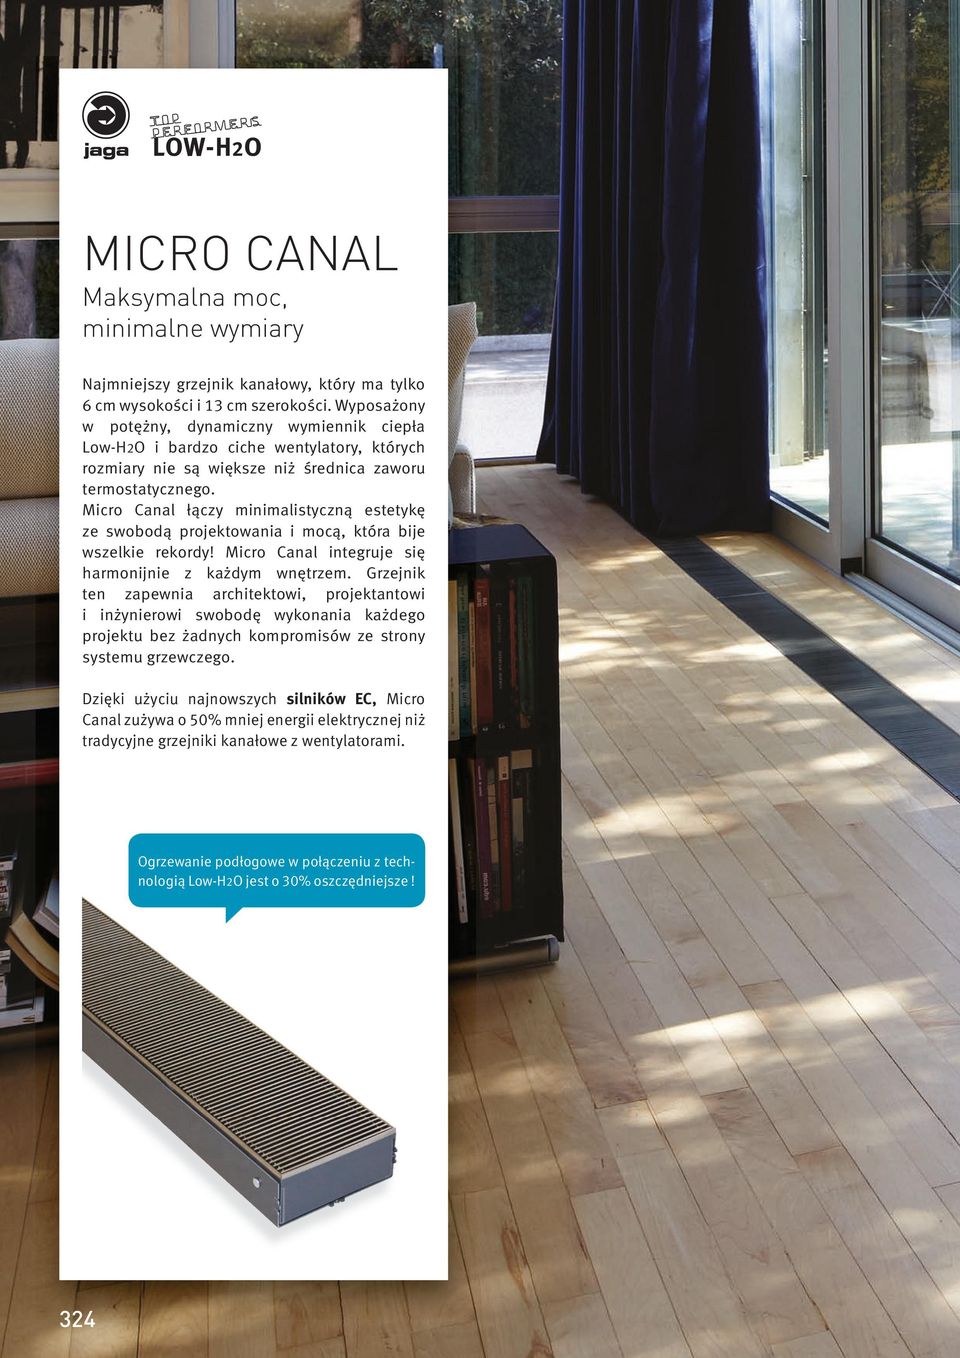 Micro Canal łączy minimalistyczną estetykę ze swobodą projektowania i mocą, która bije wszelkie rekordy! Micro Canal integruje się harmonijnie z każdym wnętrzem.